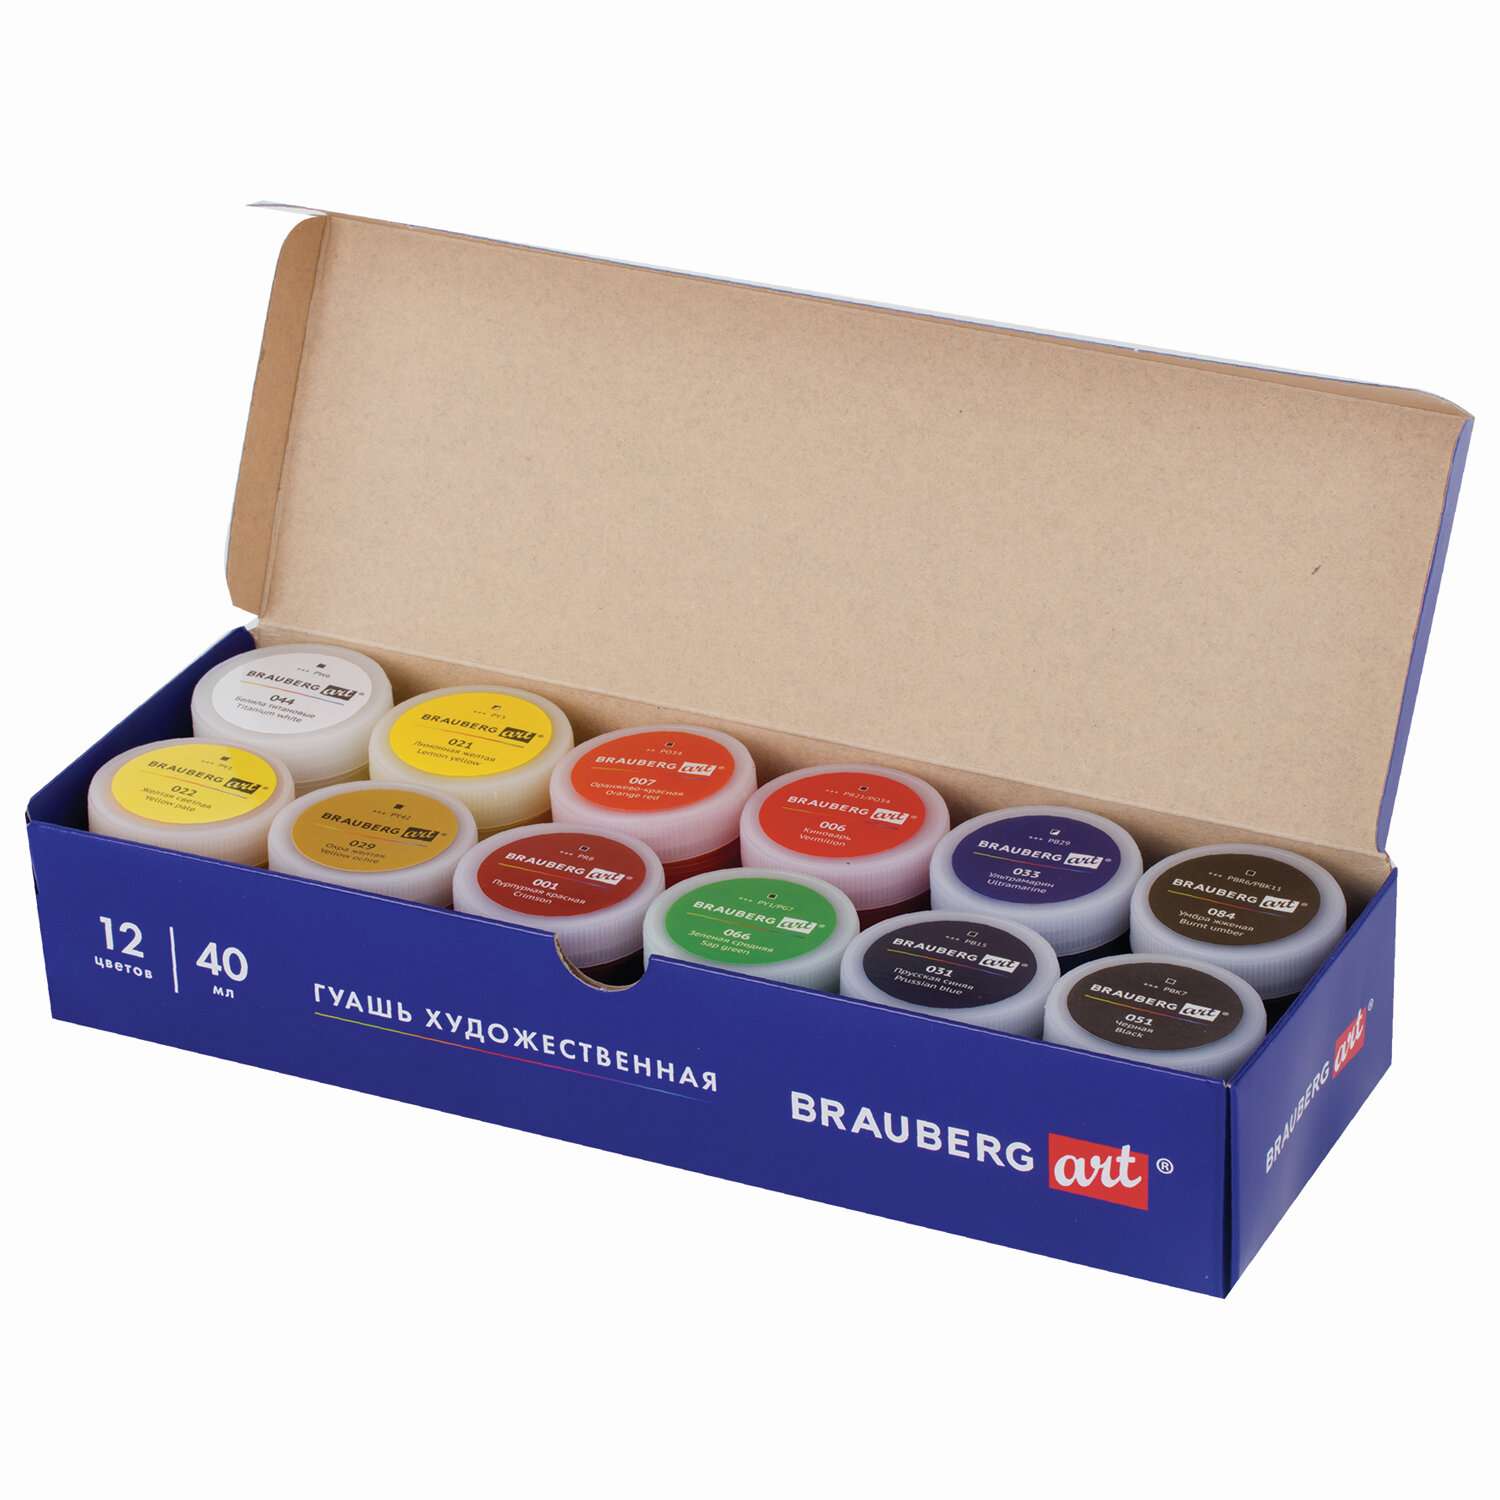 Краска гуашь Brauberg для рисования художественная набор 12 цветов в баночках по 40 мл - фото 16